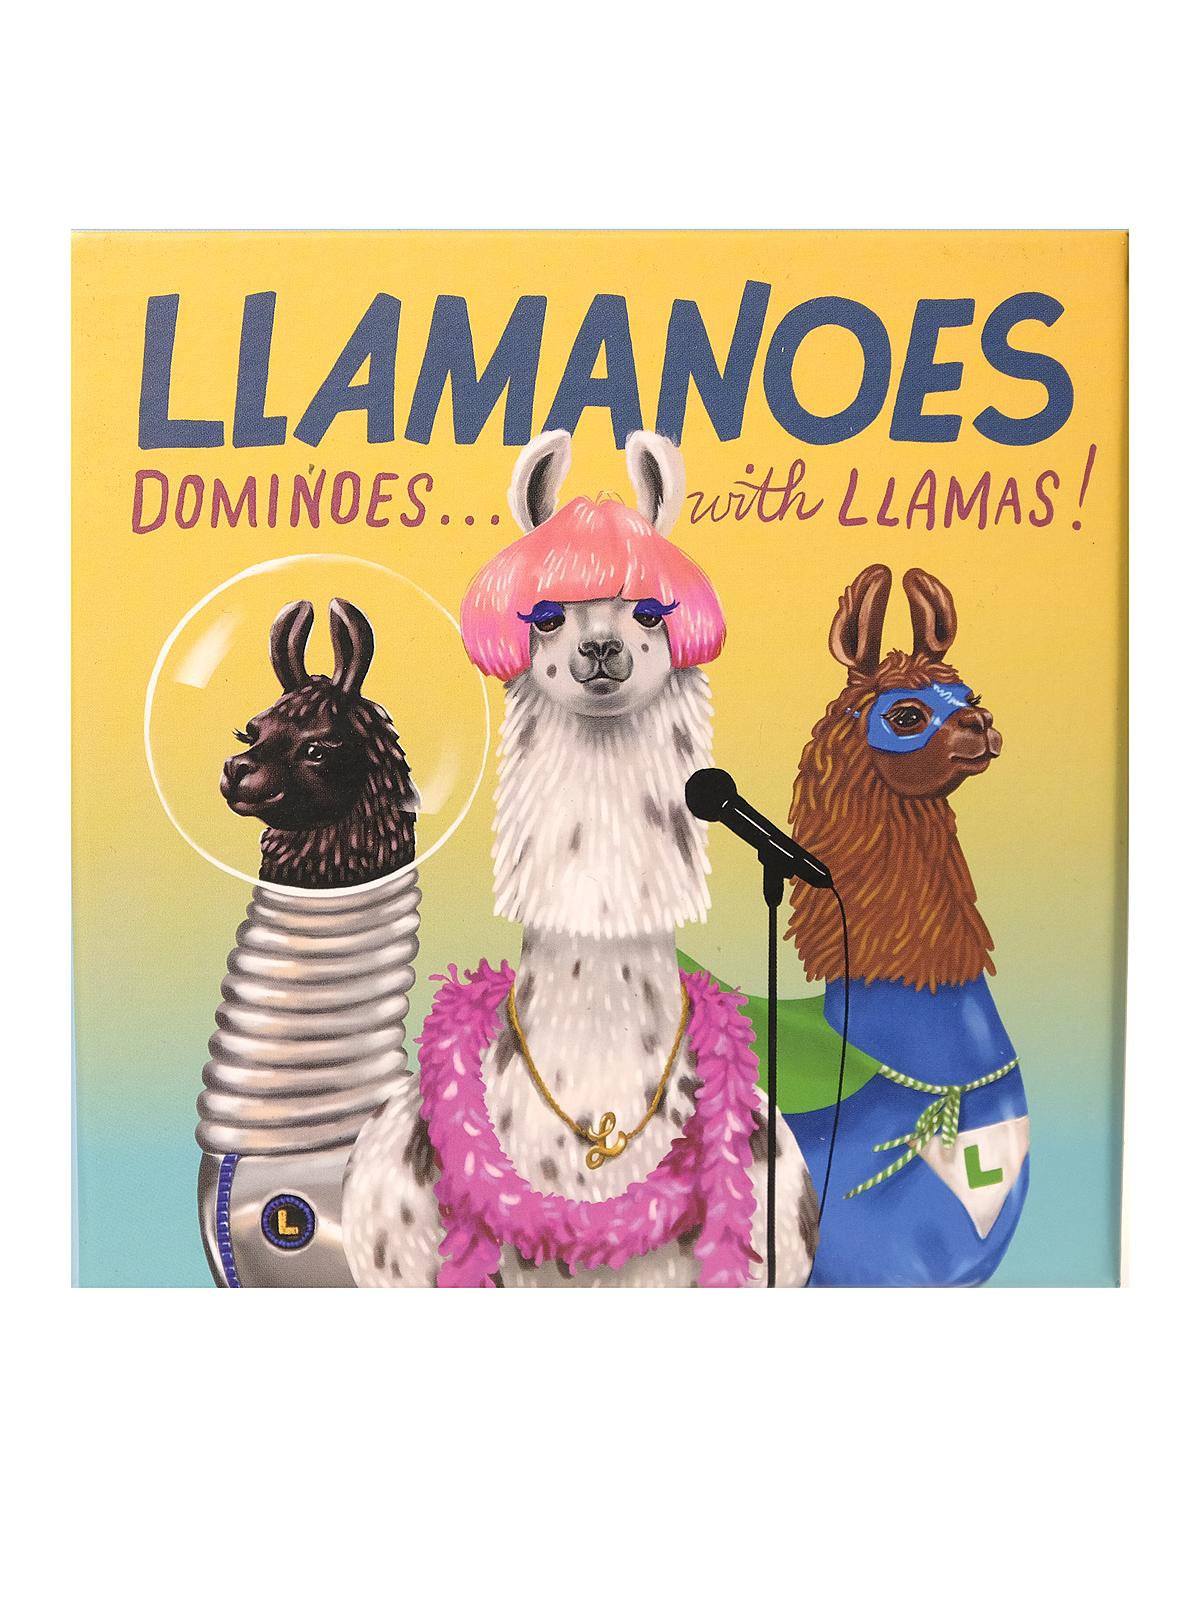 Llamanoes Each